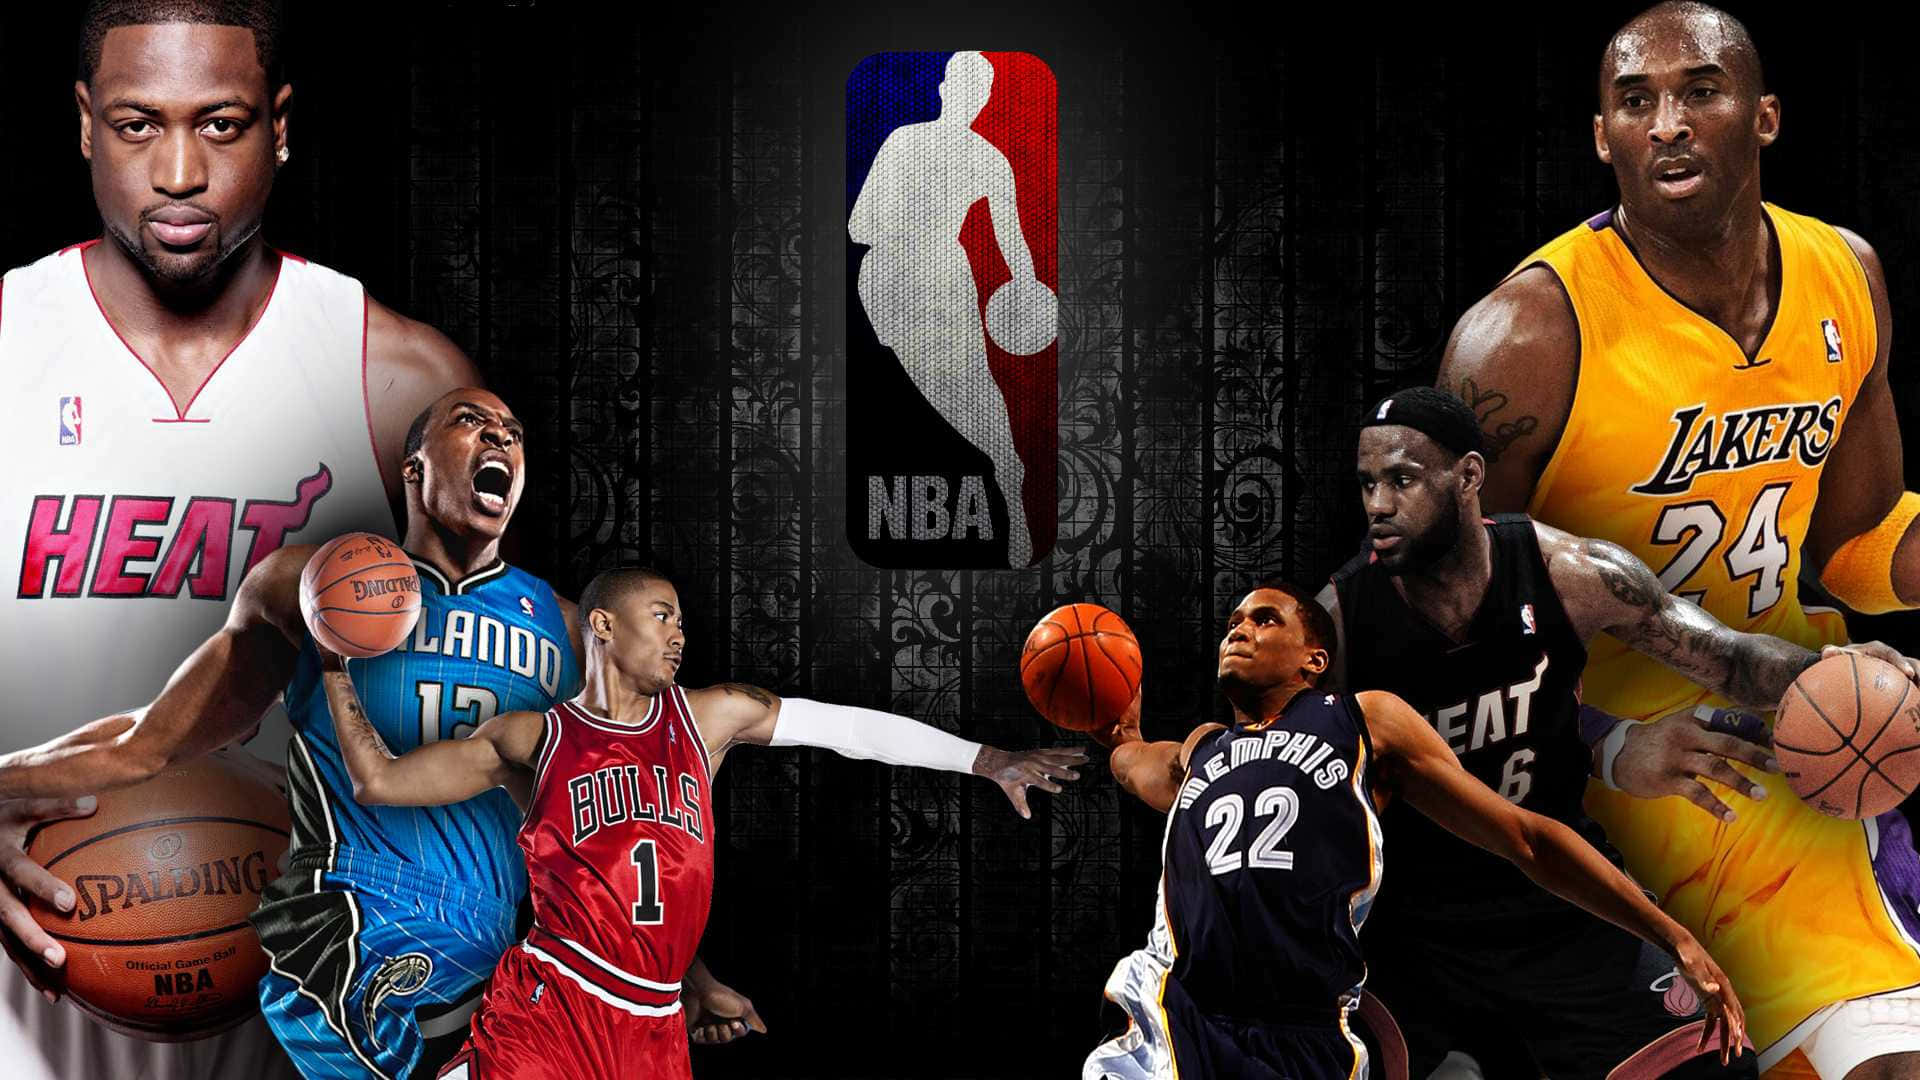 Fejrer det bedste fra NBA! Wallpaper